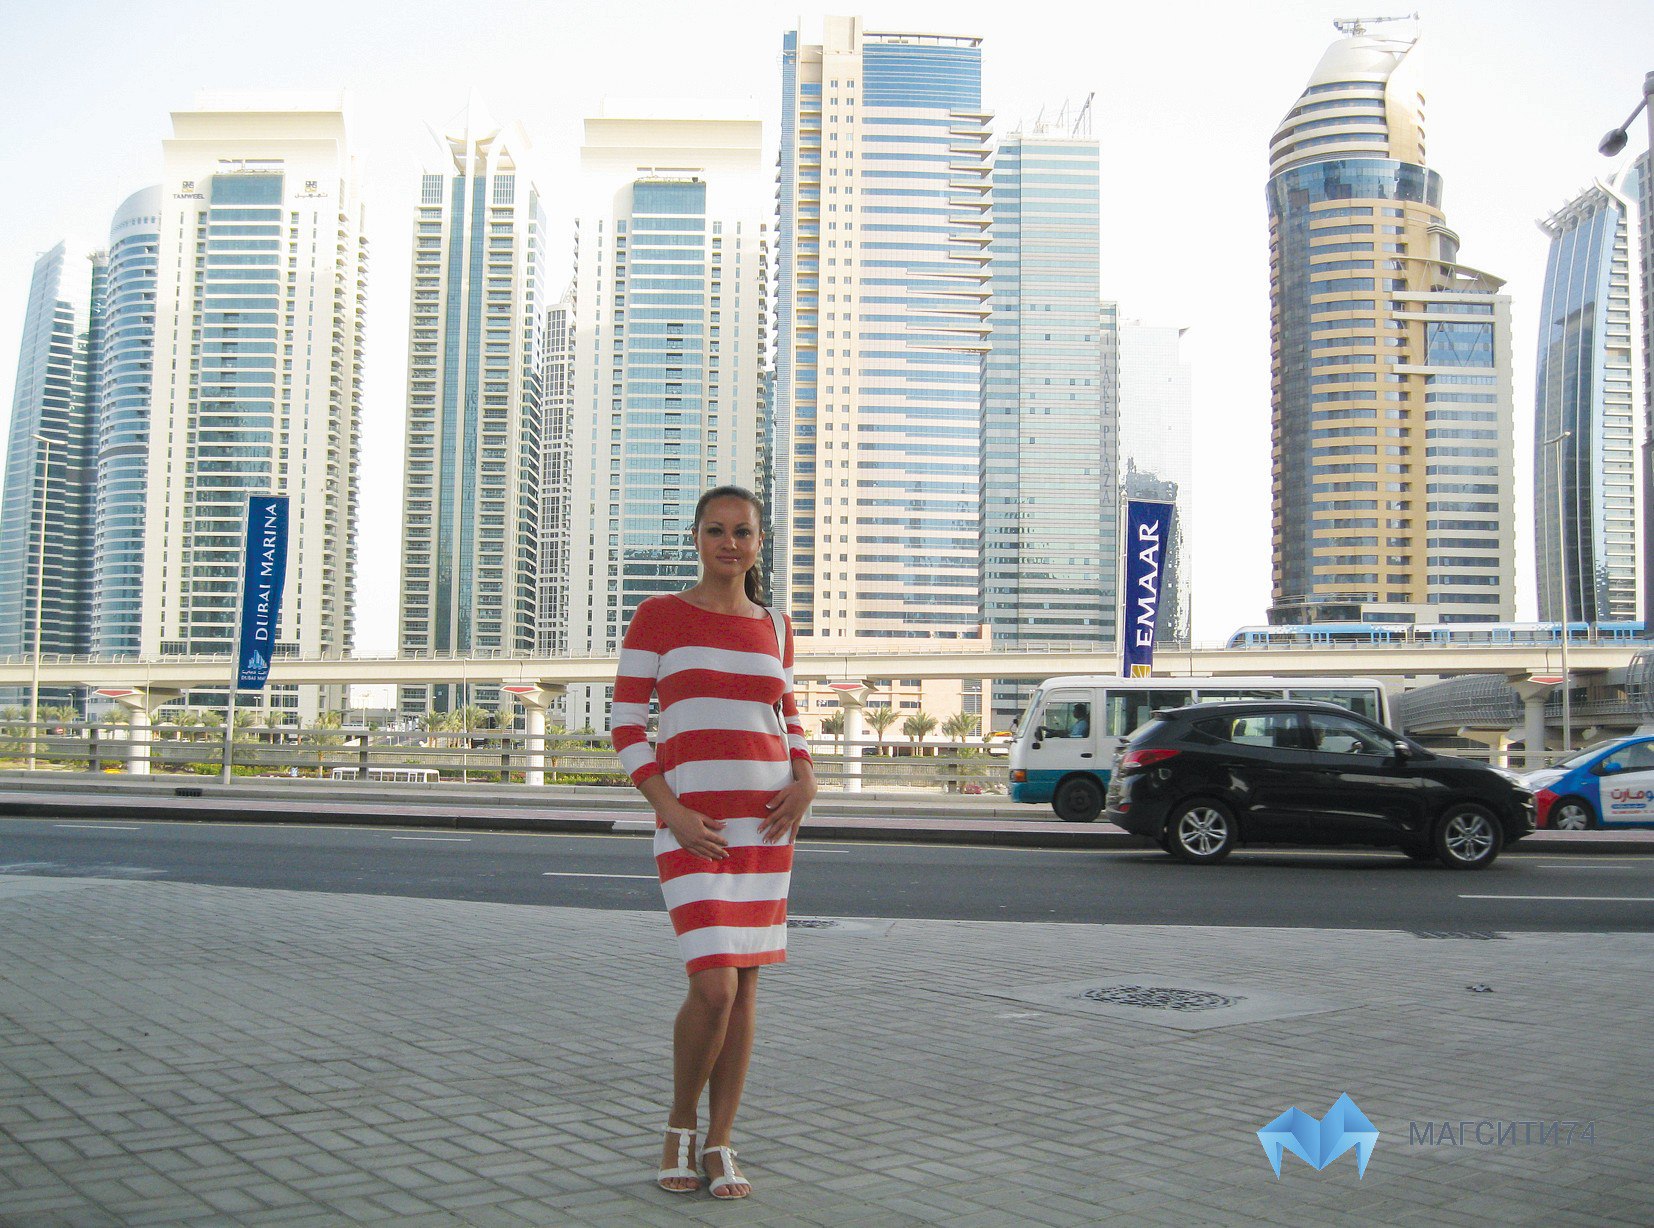 Дубай можно ли в шортах. Дубай люди на улицах. Одежда для Эмиратов для туристов. Дубай женщины. Дубай улицы для туристов.